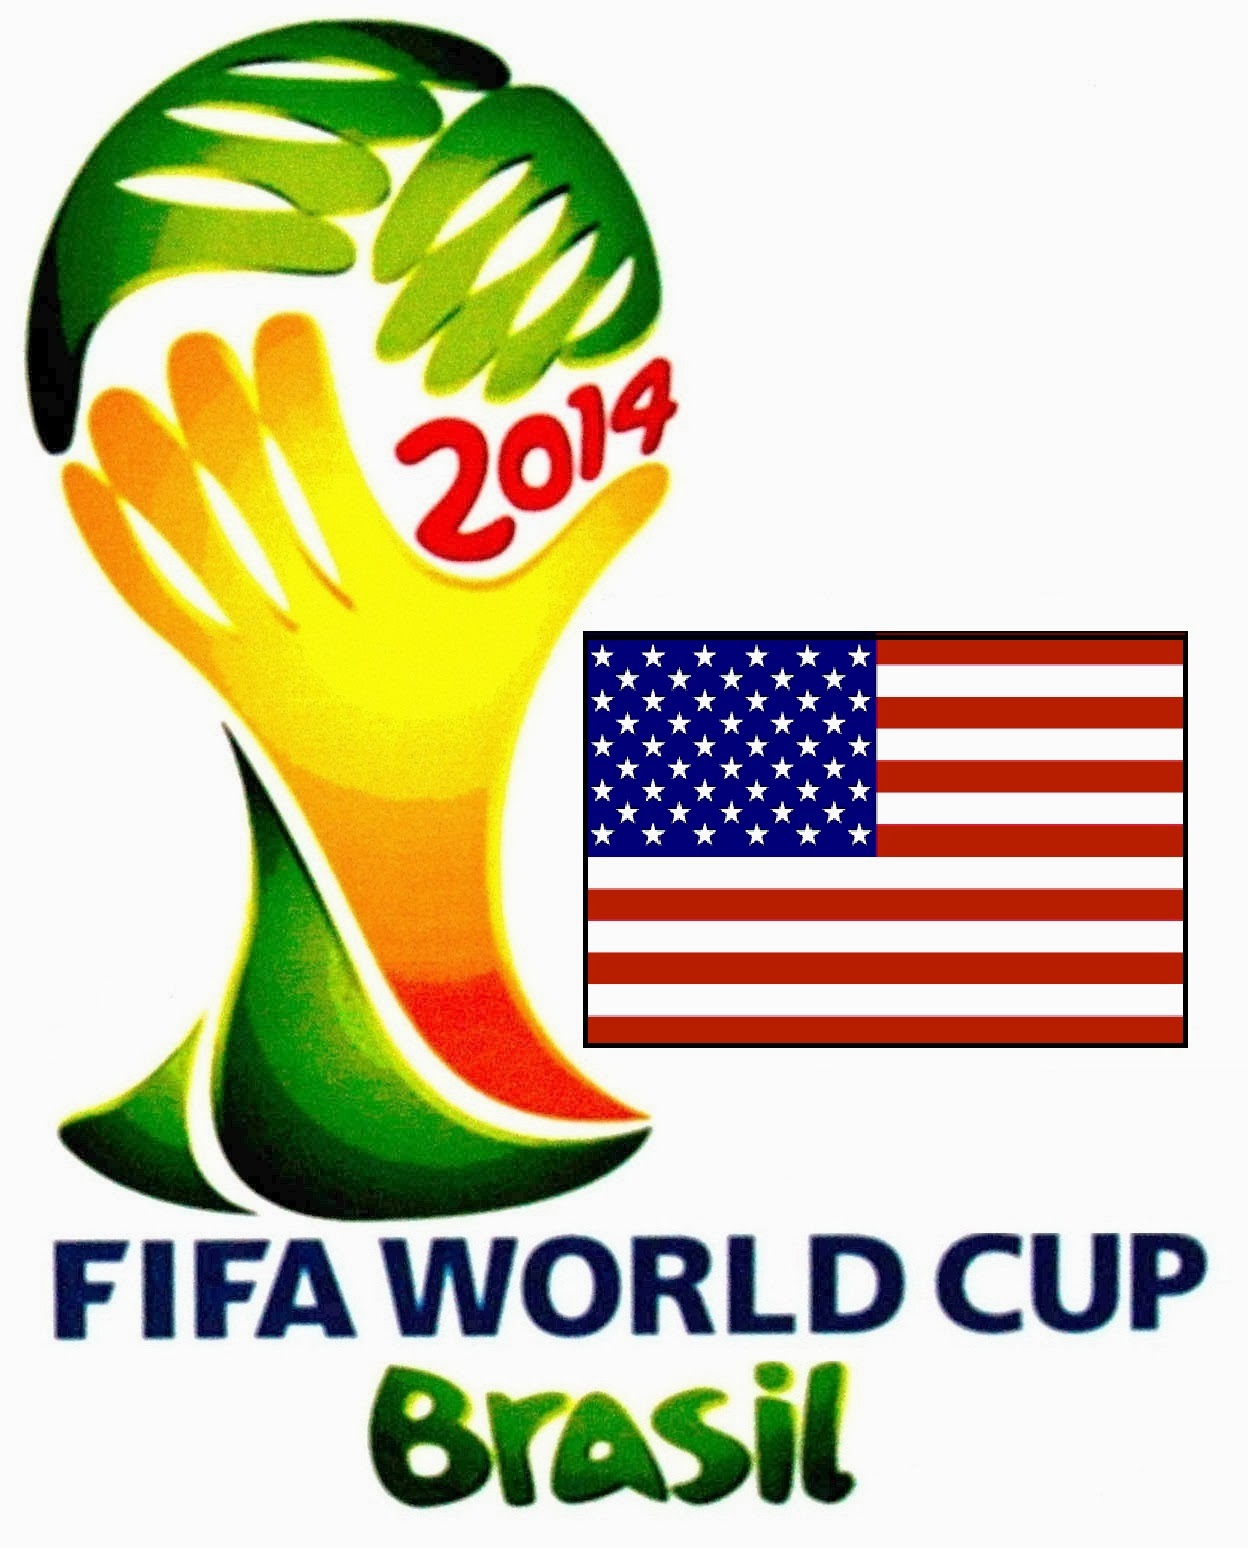 Daftar Nama Pemain Timnas Amerika Serikat Piala Dunia 2014